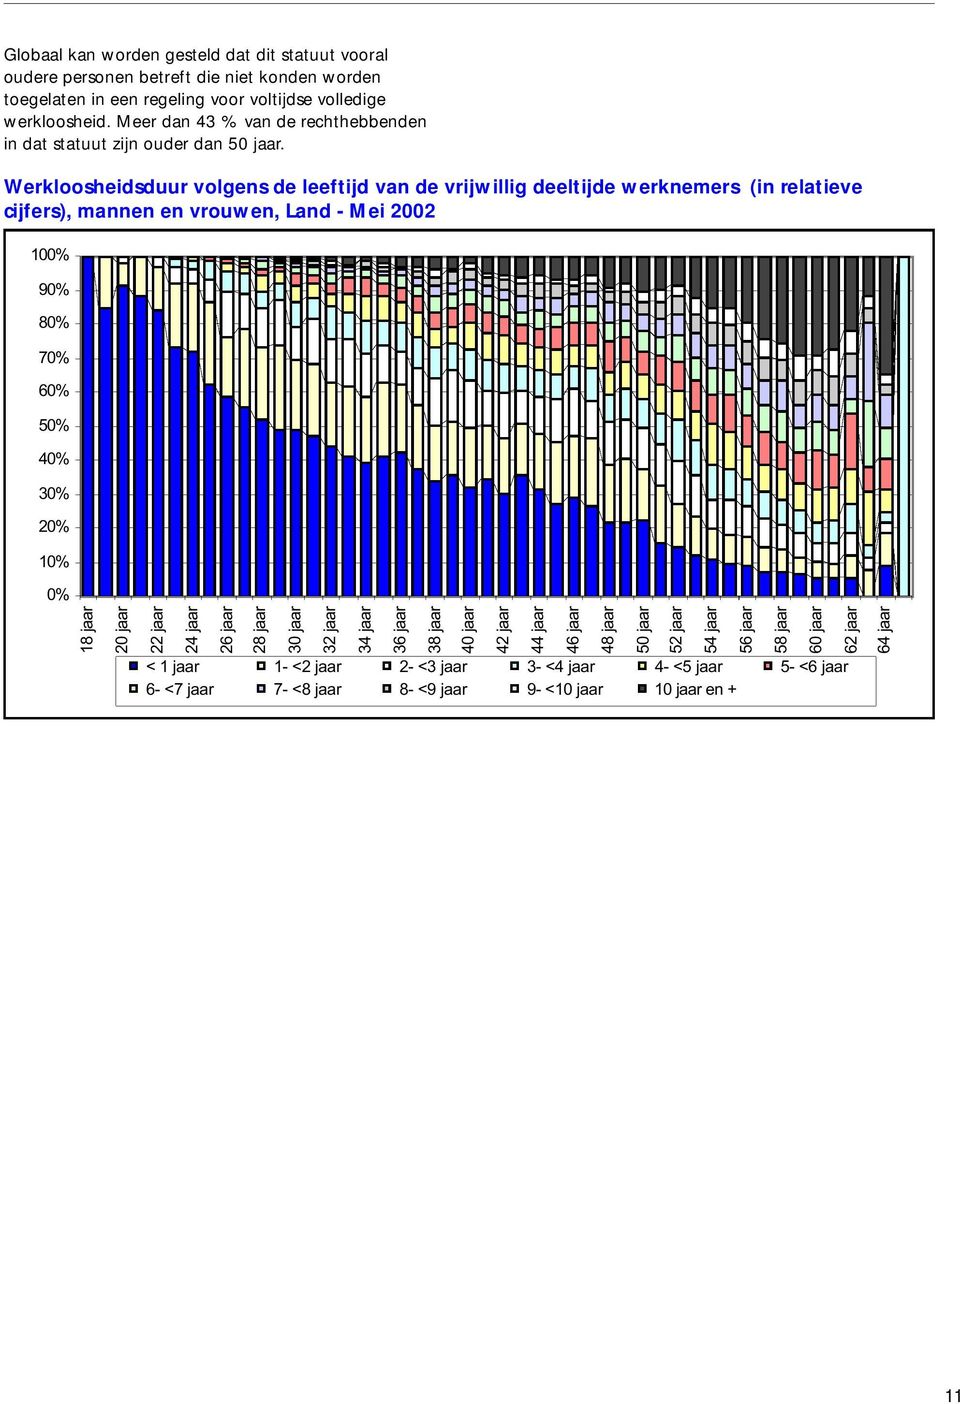 Werkloosheidsduur volgens de leeftijd van de vrijwillig deeltijde werknemers (in relatieve cijfers), mannen en vrouwen, Land - Mei 2002